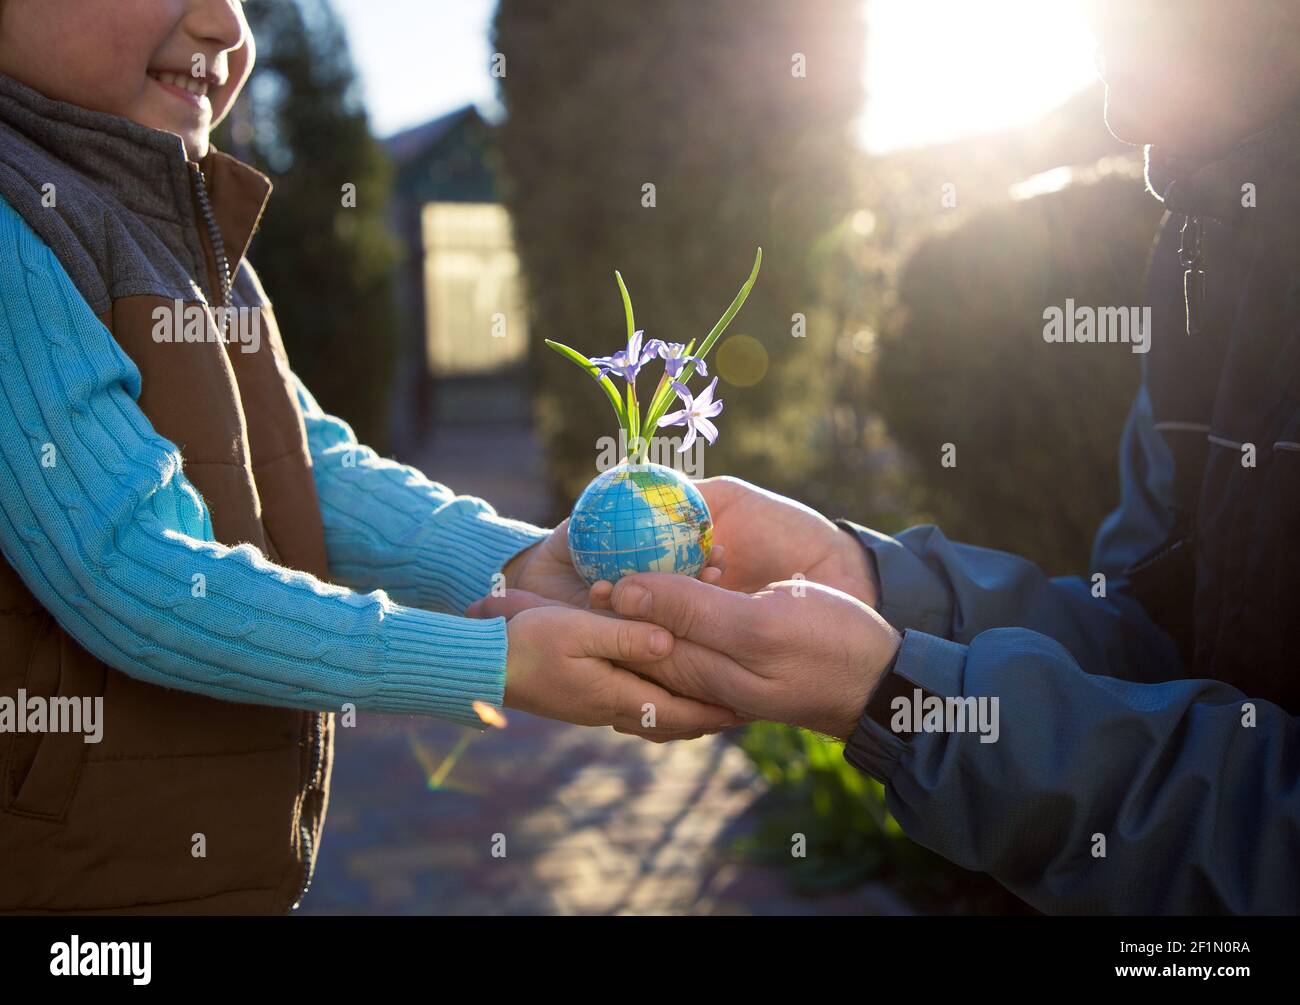 In den Händen von Kind und Mann, Vater und Sohn ist Erde in Miniatur, eine kleine Kugel in Form eines Globus, aus dem kleine Blumen wachsen. Earth Day Konzept, Ec Stockfoto